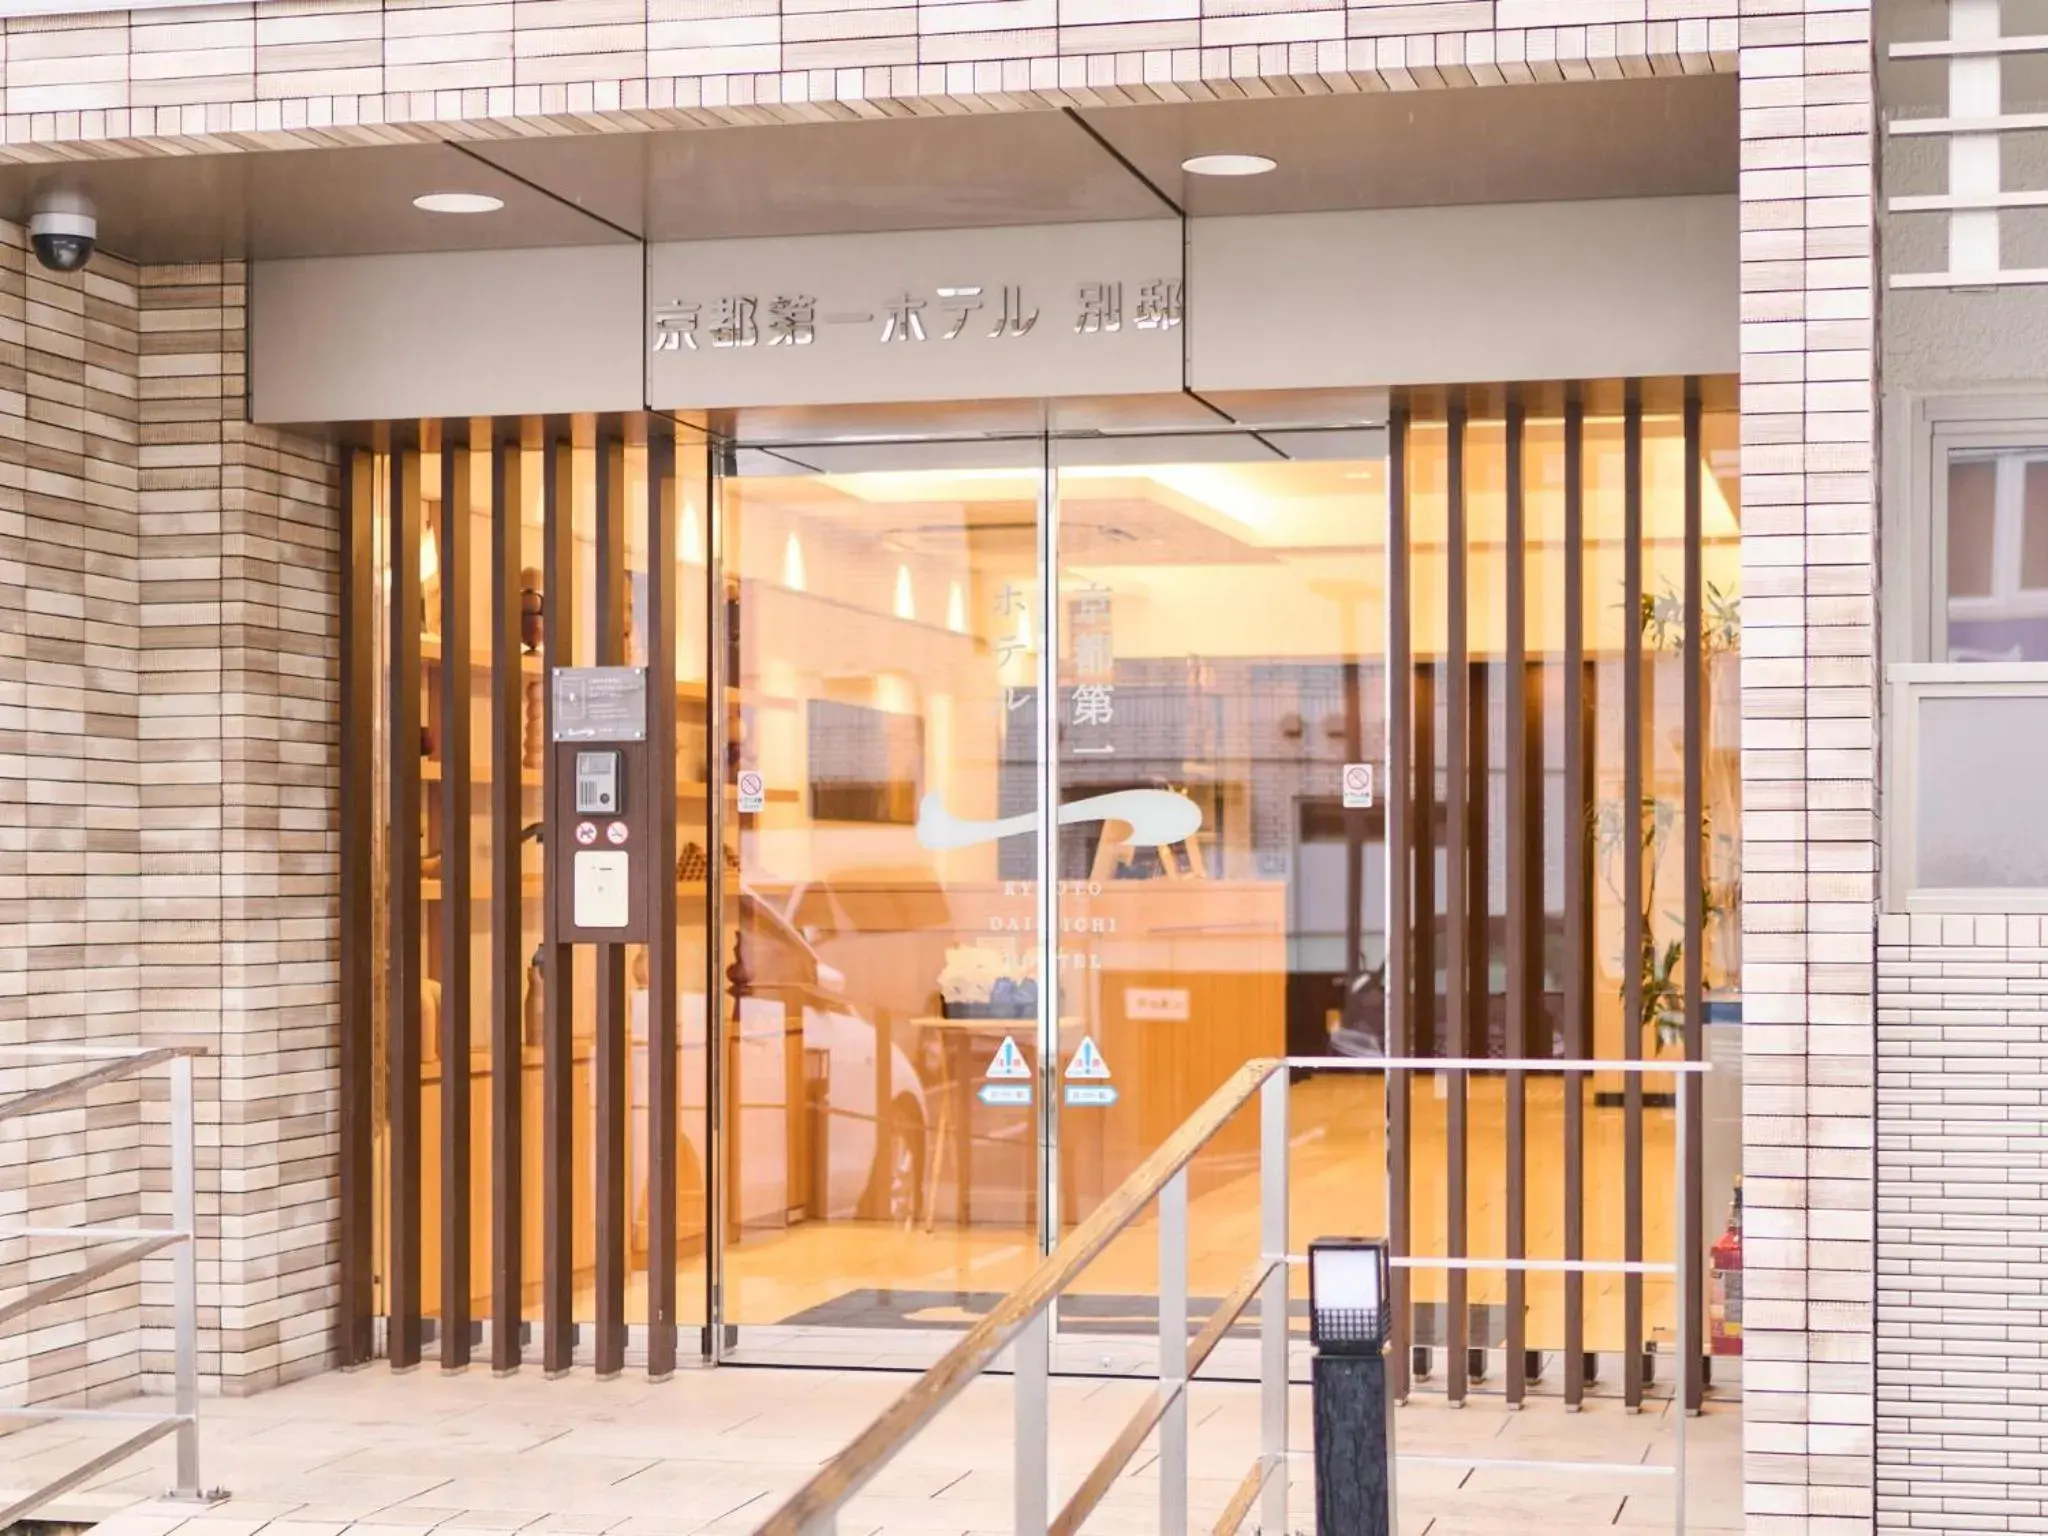 Facade/entrance in Kyoto Daiichi Hotel